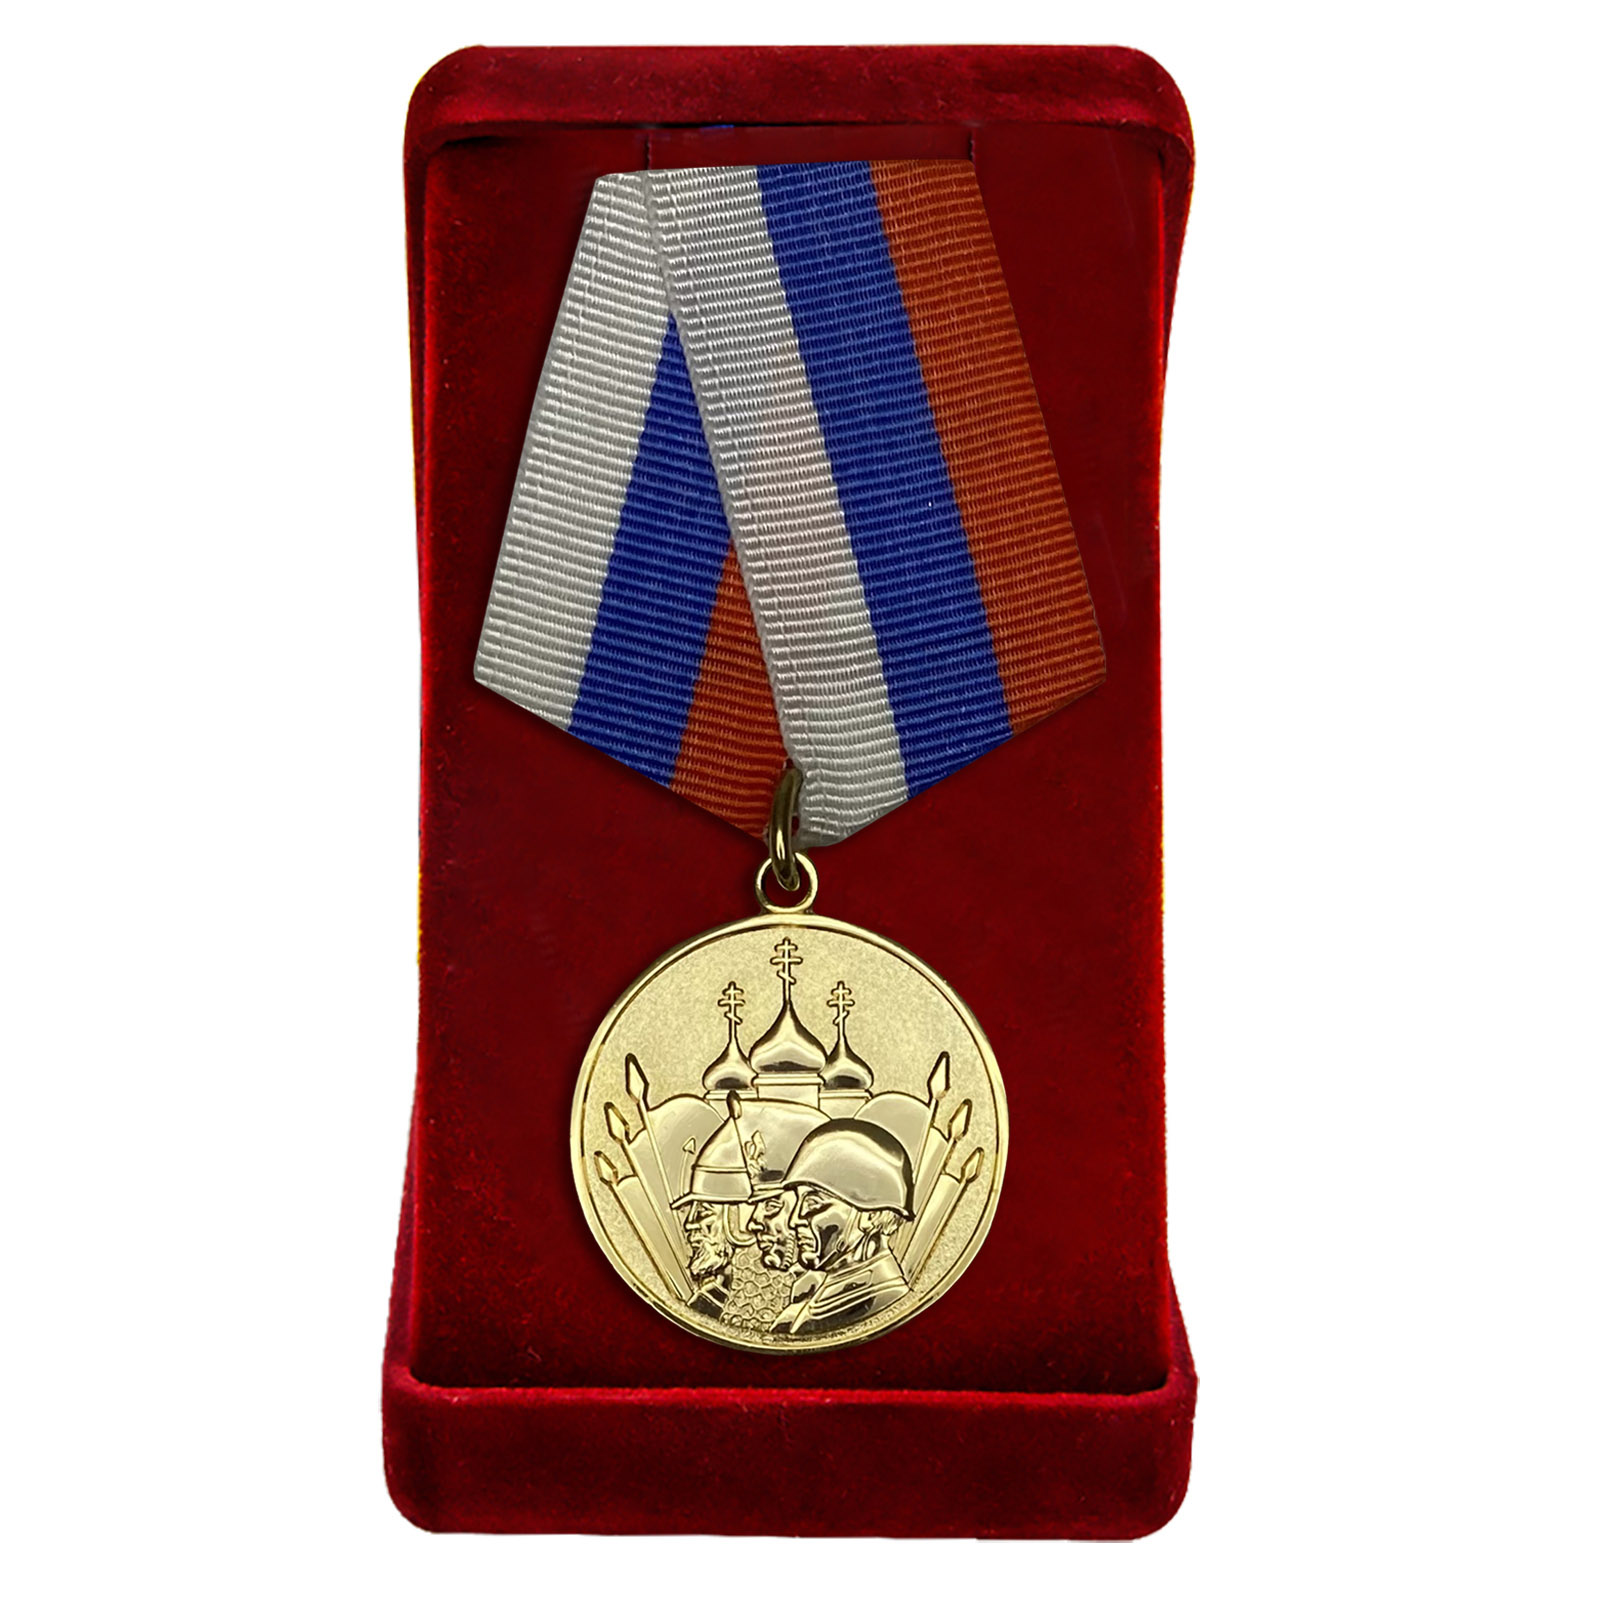 Купить латунную медаль 23 февраля онлайн в подарок